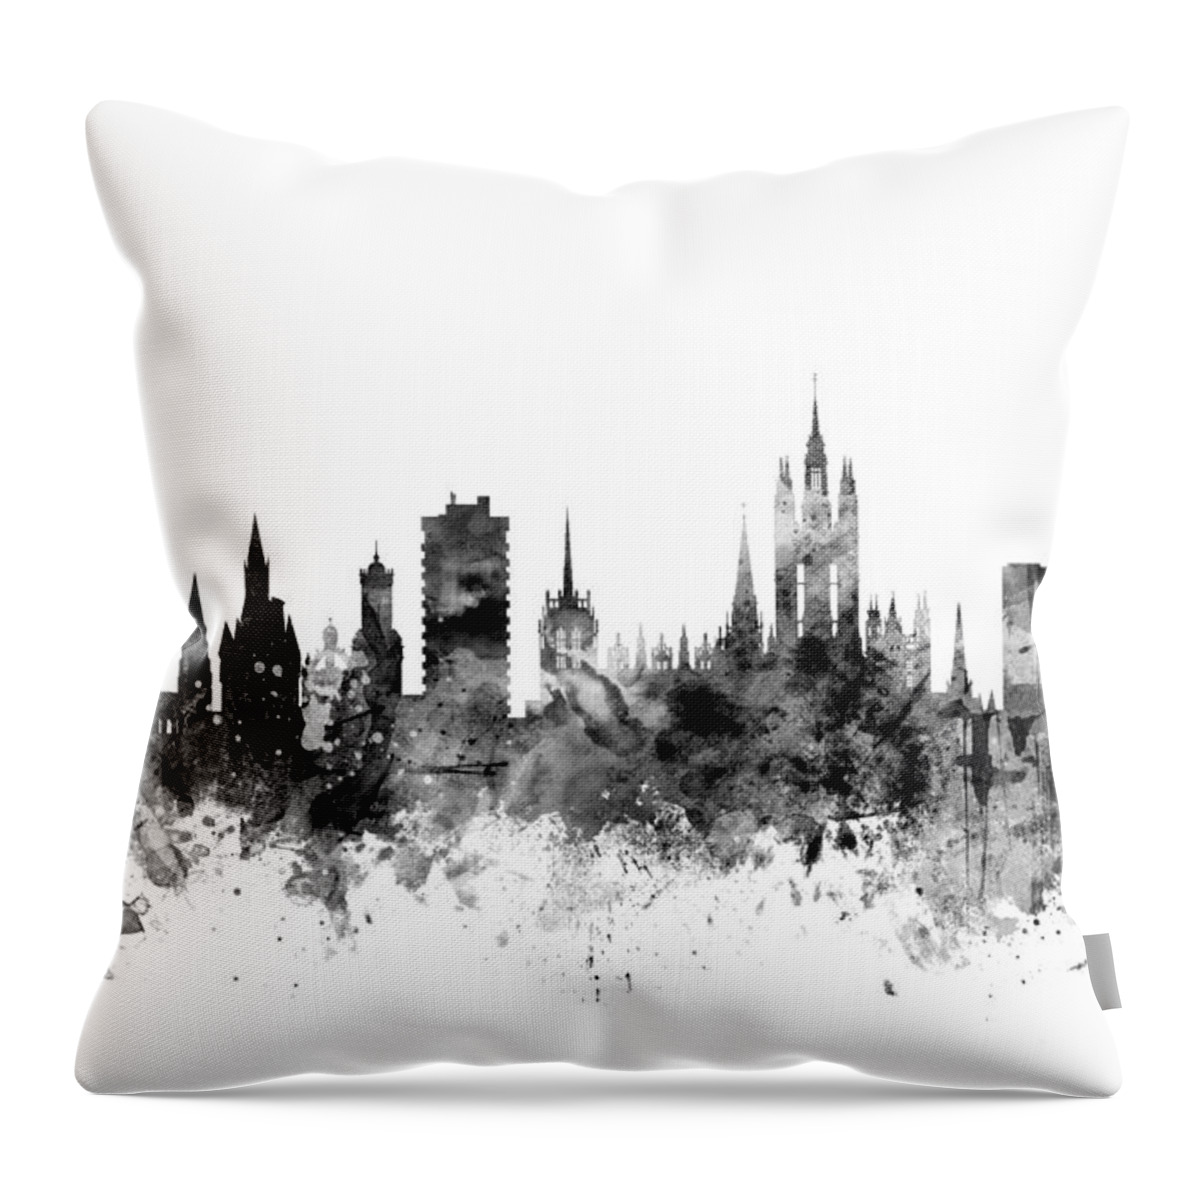 City Throw Pillow featuring the digital art Aberdeen Scotland Skyline by Michael Tompsett